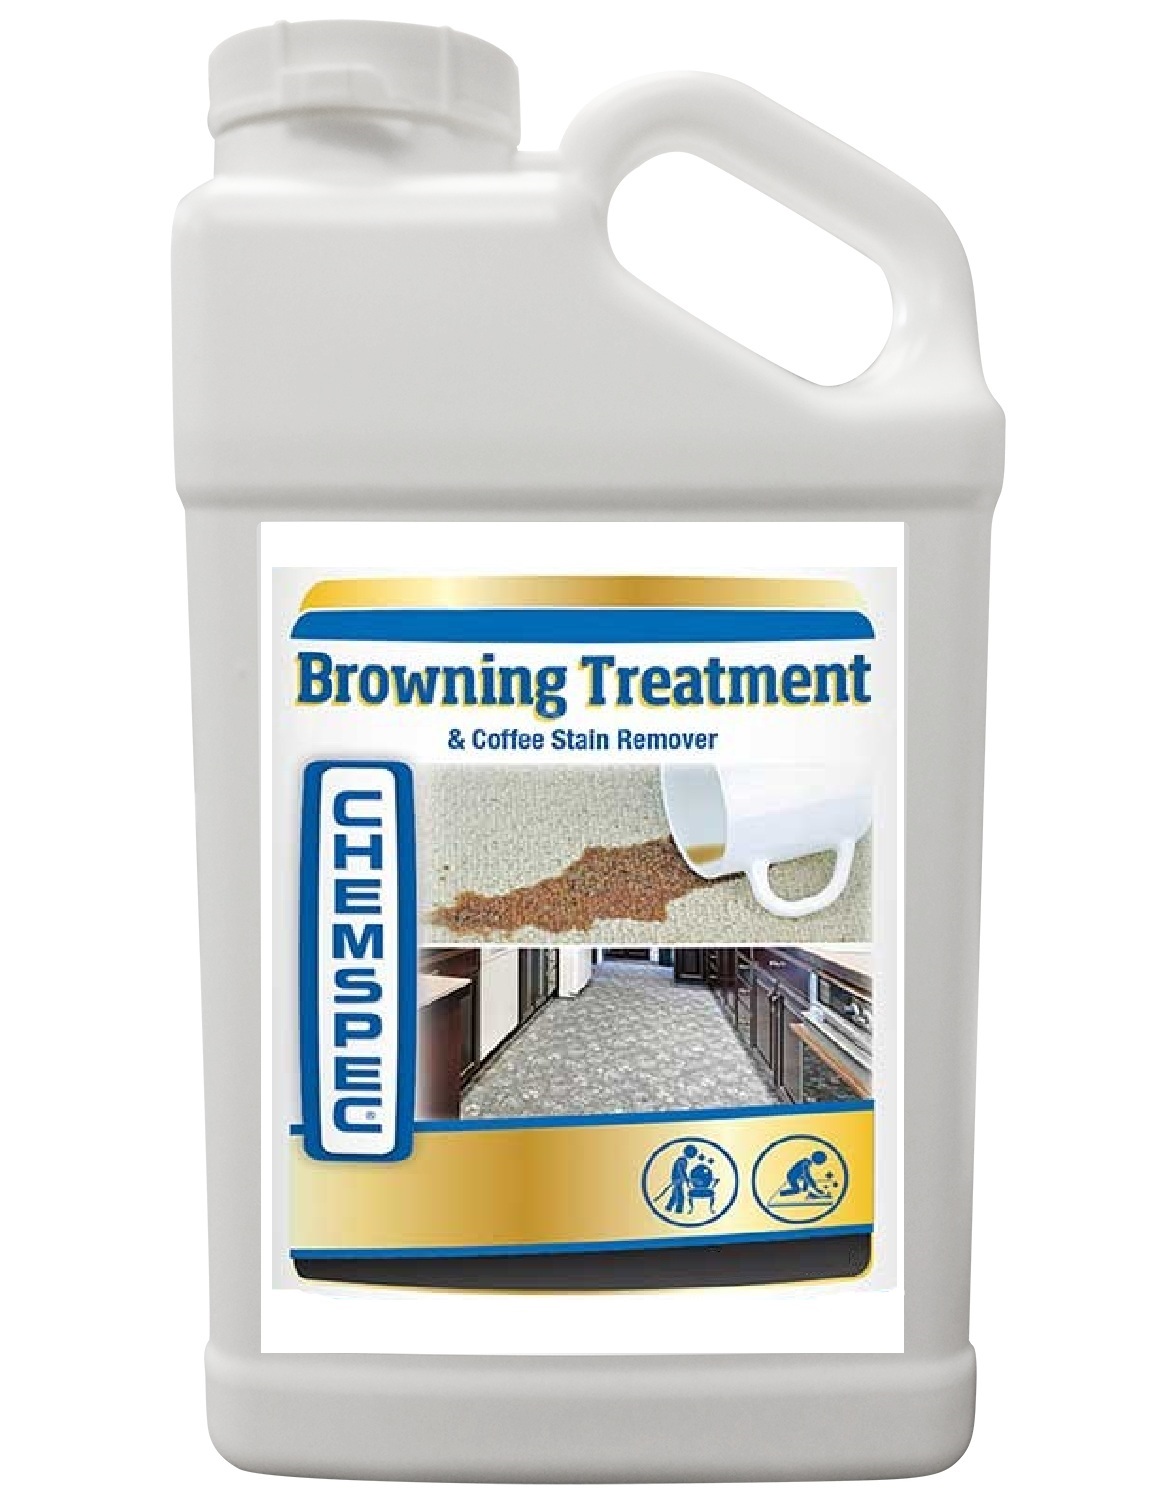 Browning Treatment/Coffee Stain Remover 5 л. Пятноыводитель и осветлитель потемневшей целлюлозы. Chemspec